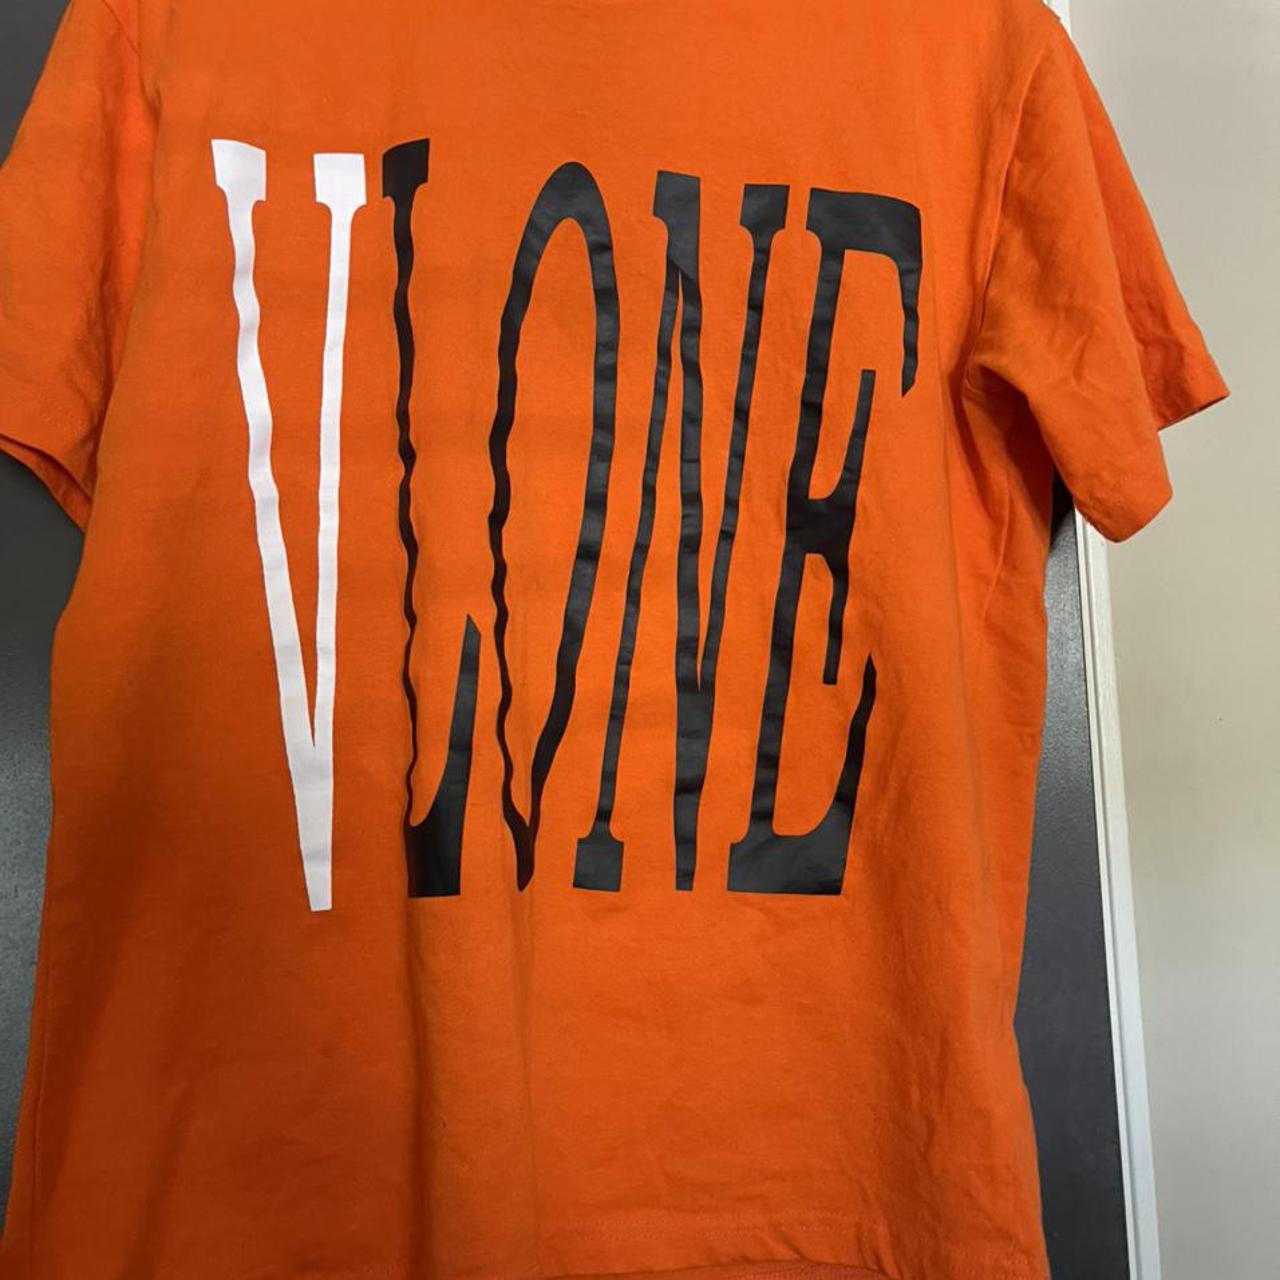 Authentic VLONE Shirt for sale #vlone #palmangels... - Depop